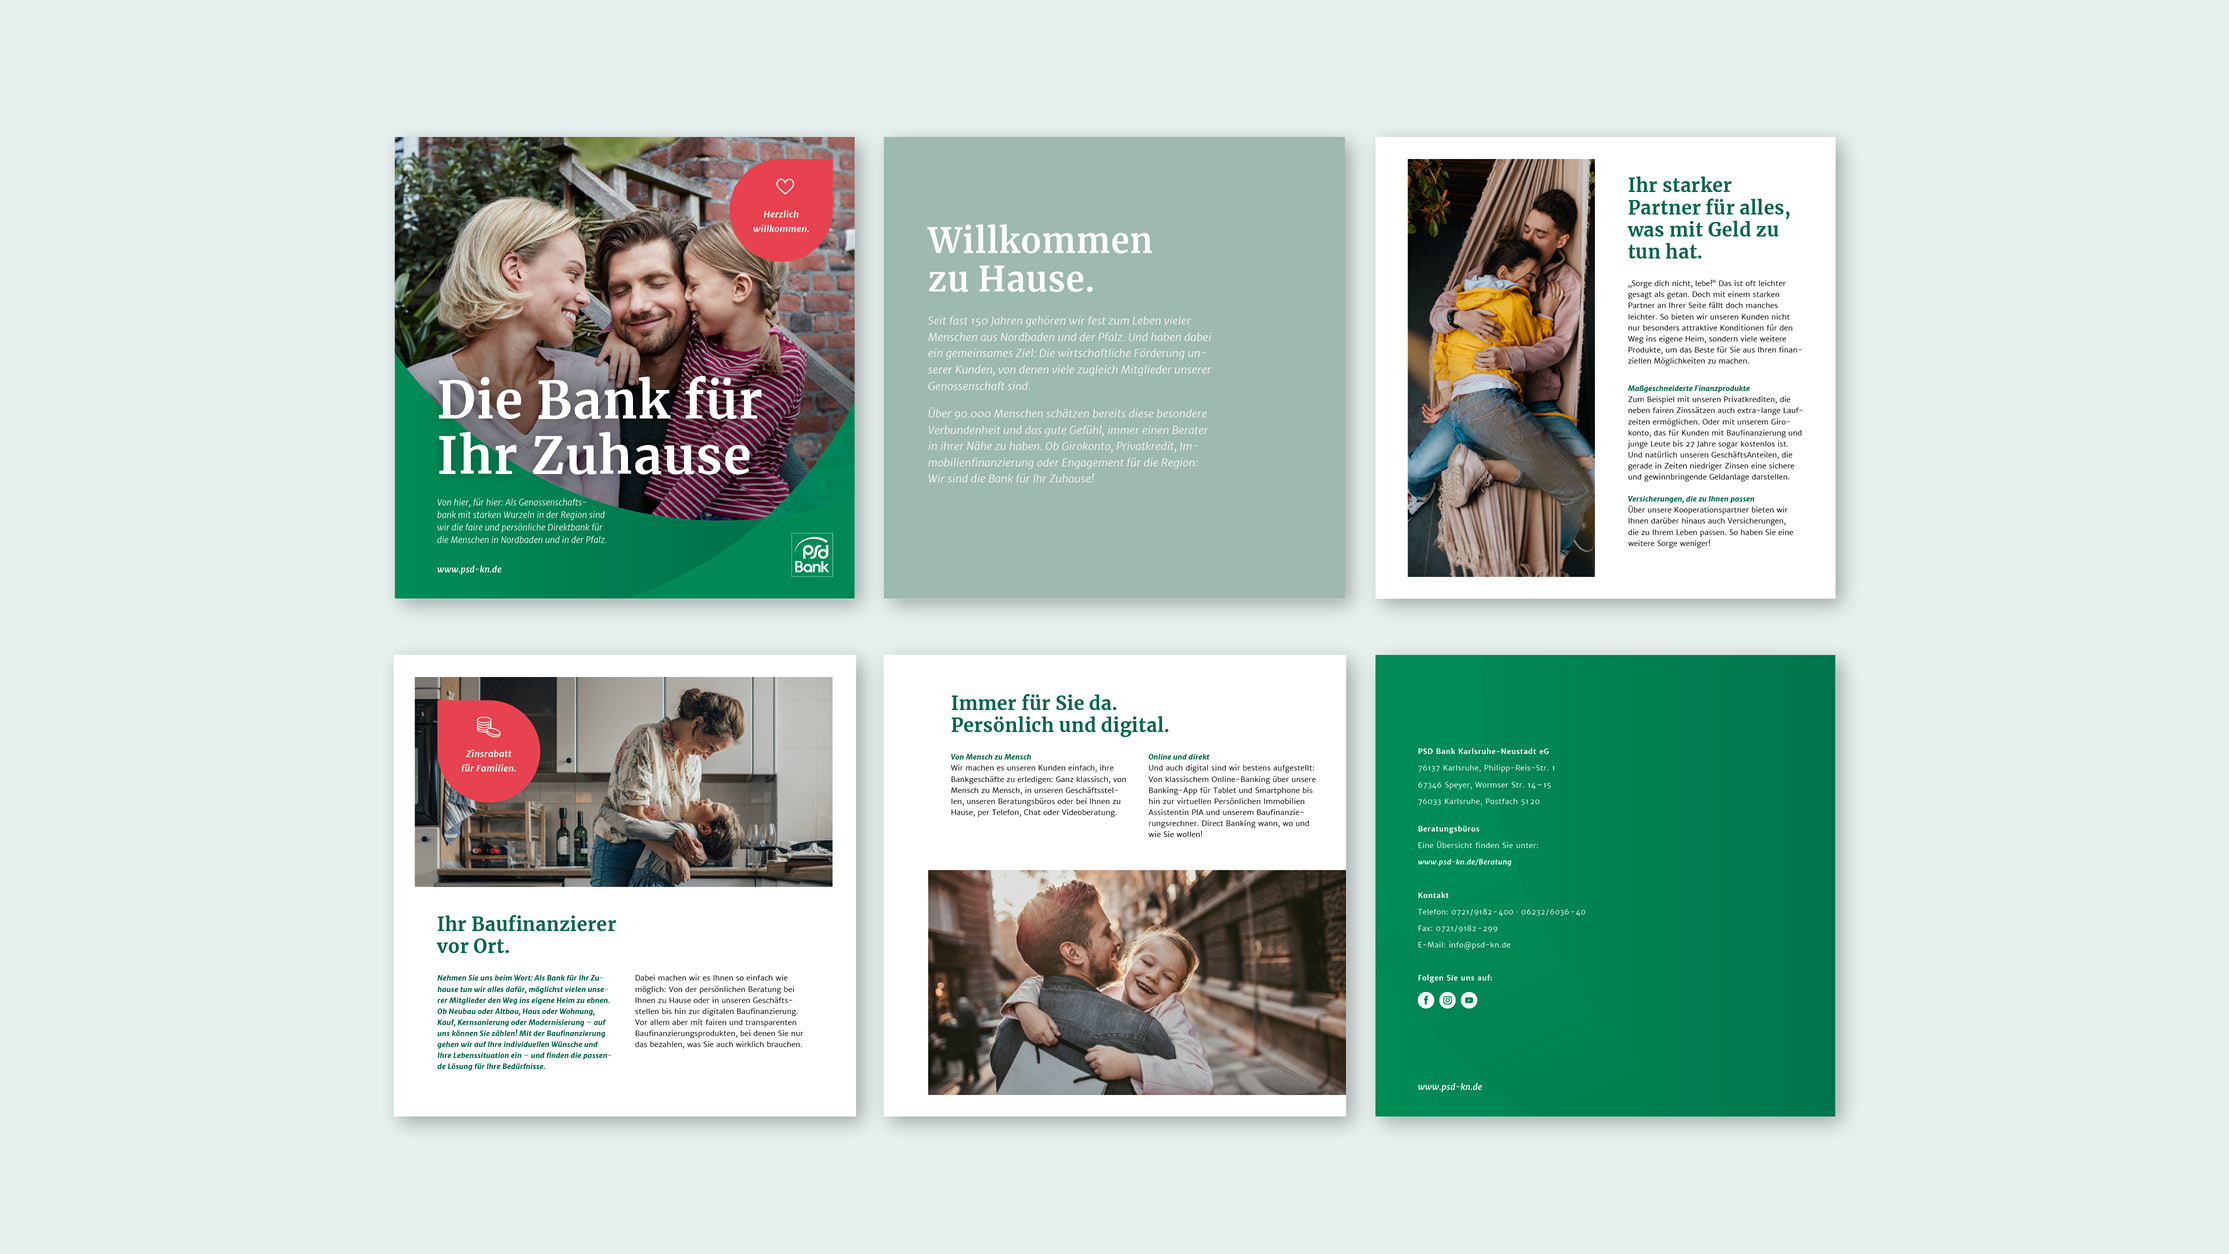 jungkommunikation_projekte_PSD-bank-karlsruhe_corporate-design_vorlage_image-broschuere_1070x602-16